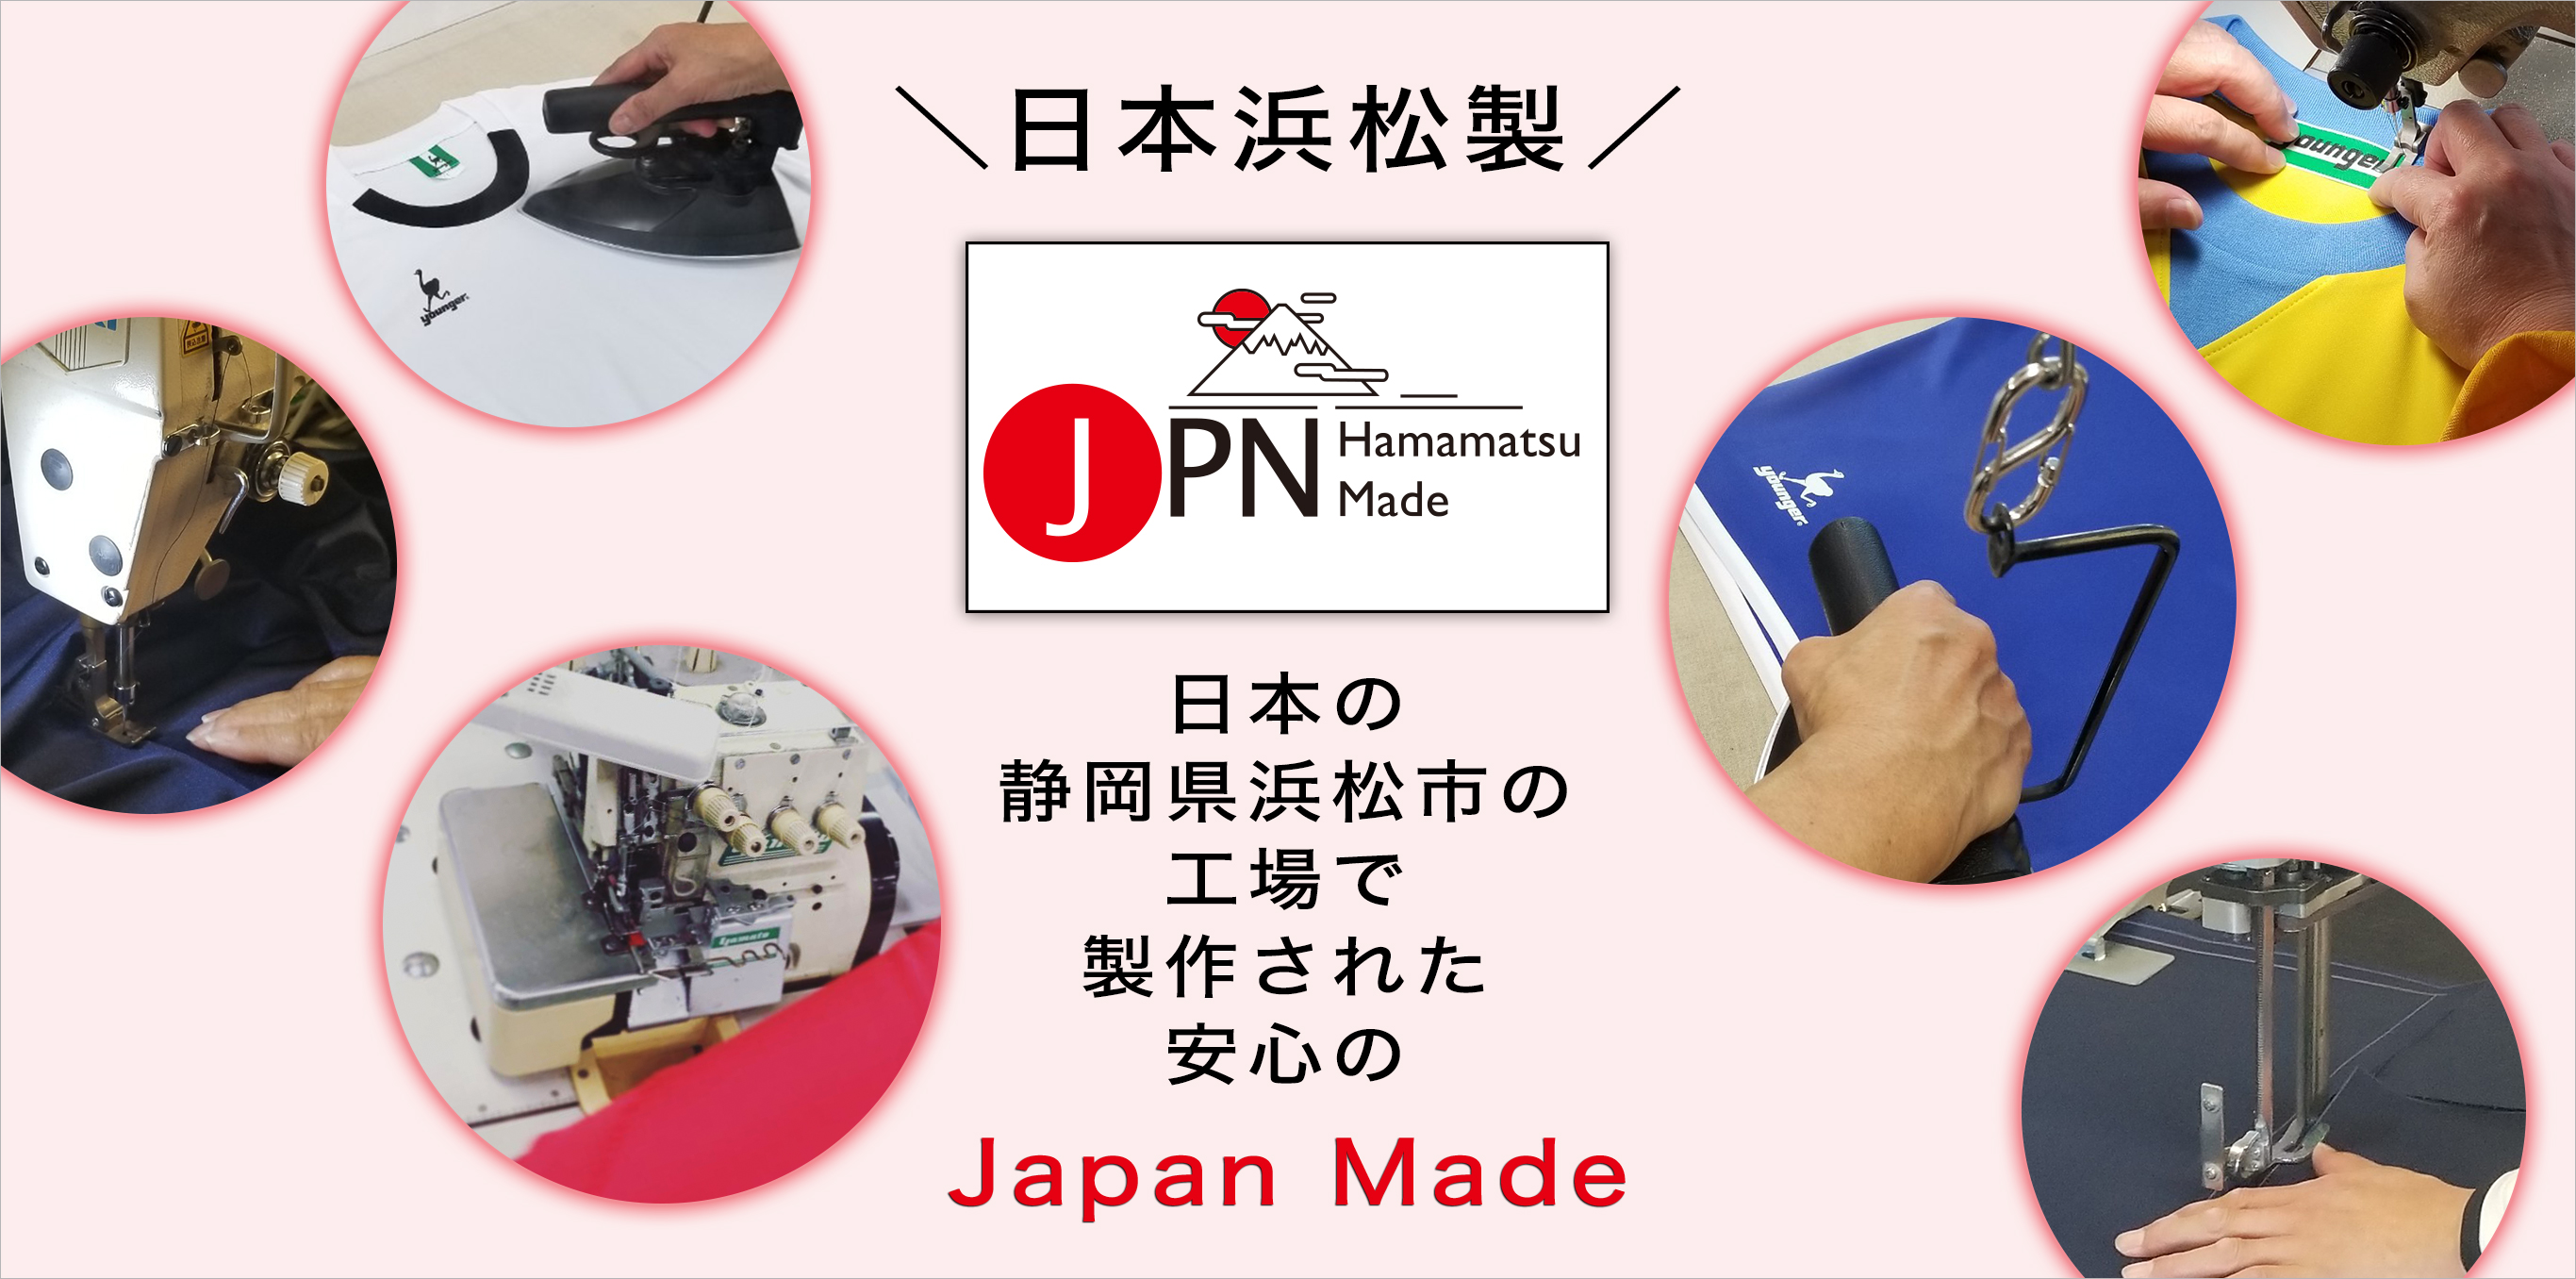 ヤンガースポーツウェアのこだわりは、日本製であること。だから、すべての製品には、日本の職人の確かな技術が織り込まれています。